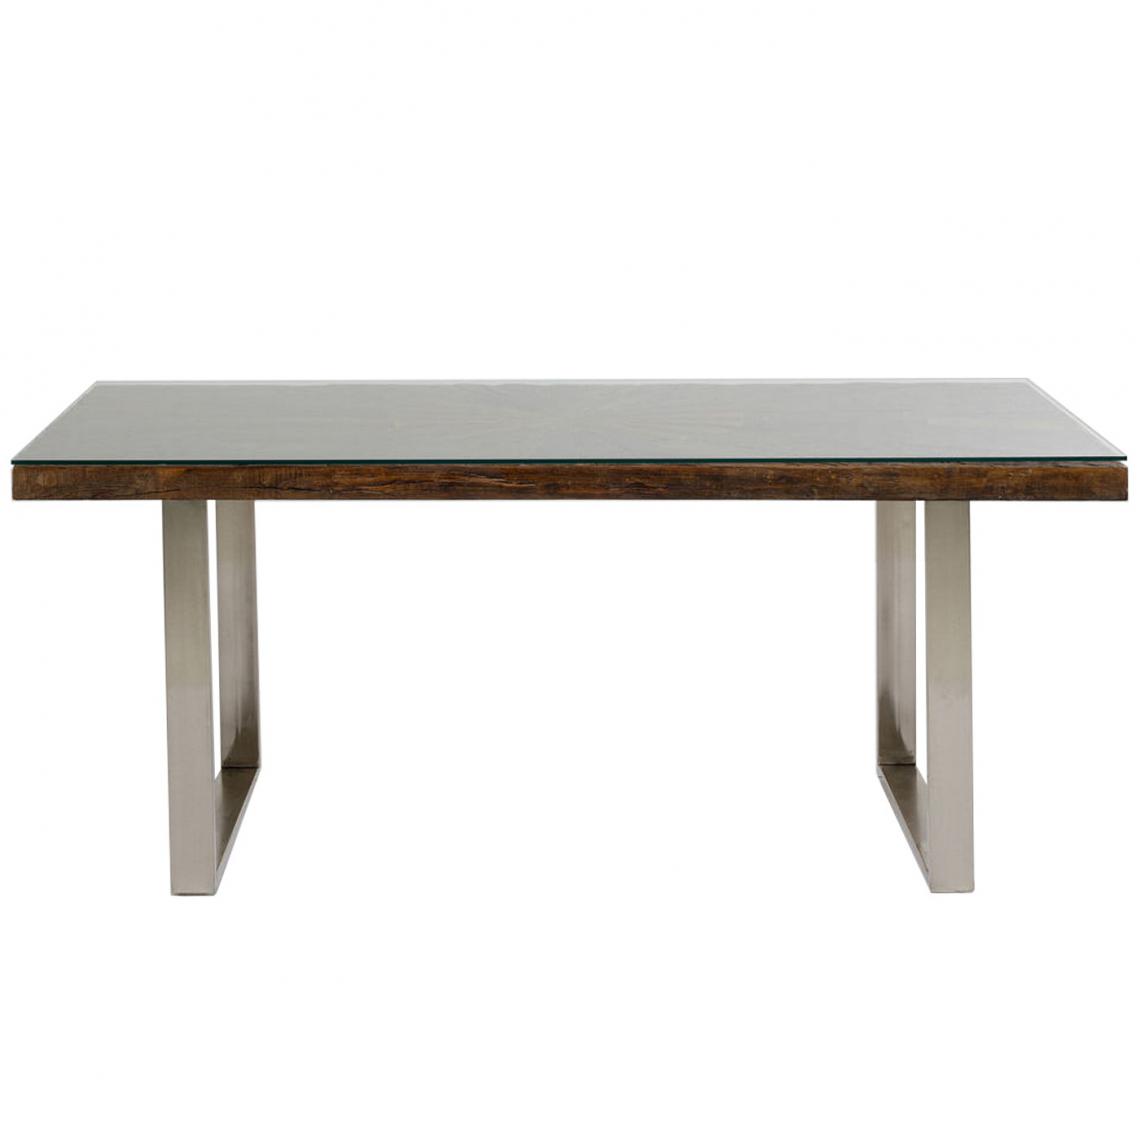 Karedesign - Table Conley 180x90cm pieds chromés Kare Design - Tables à manger